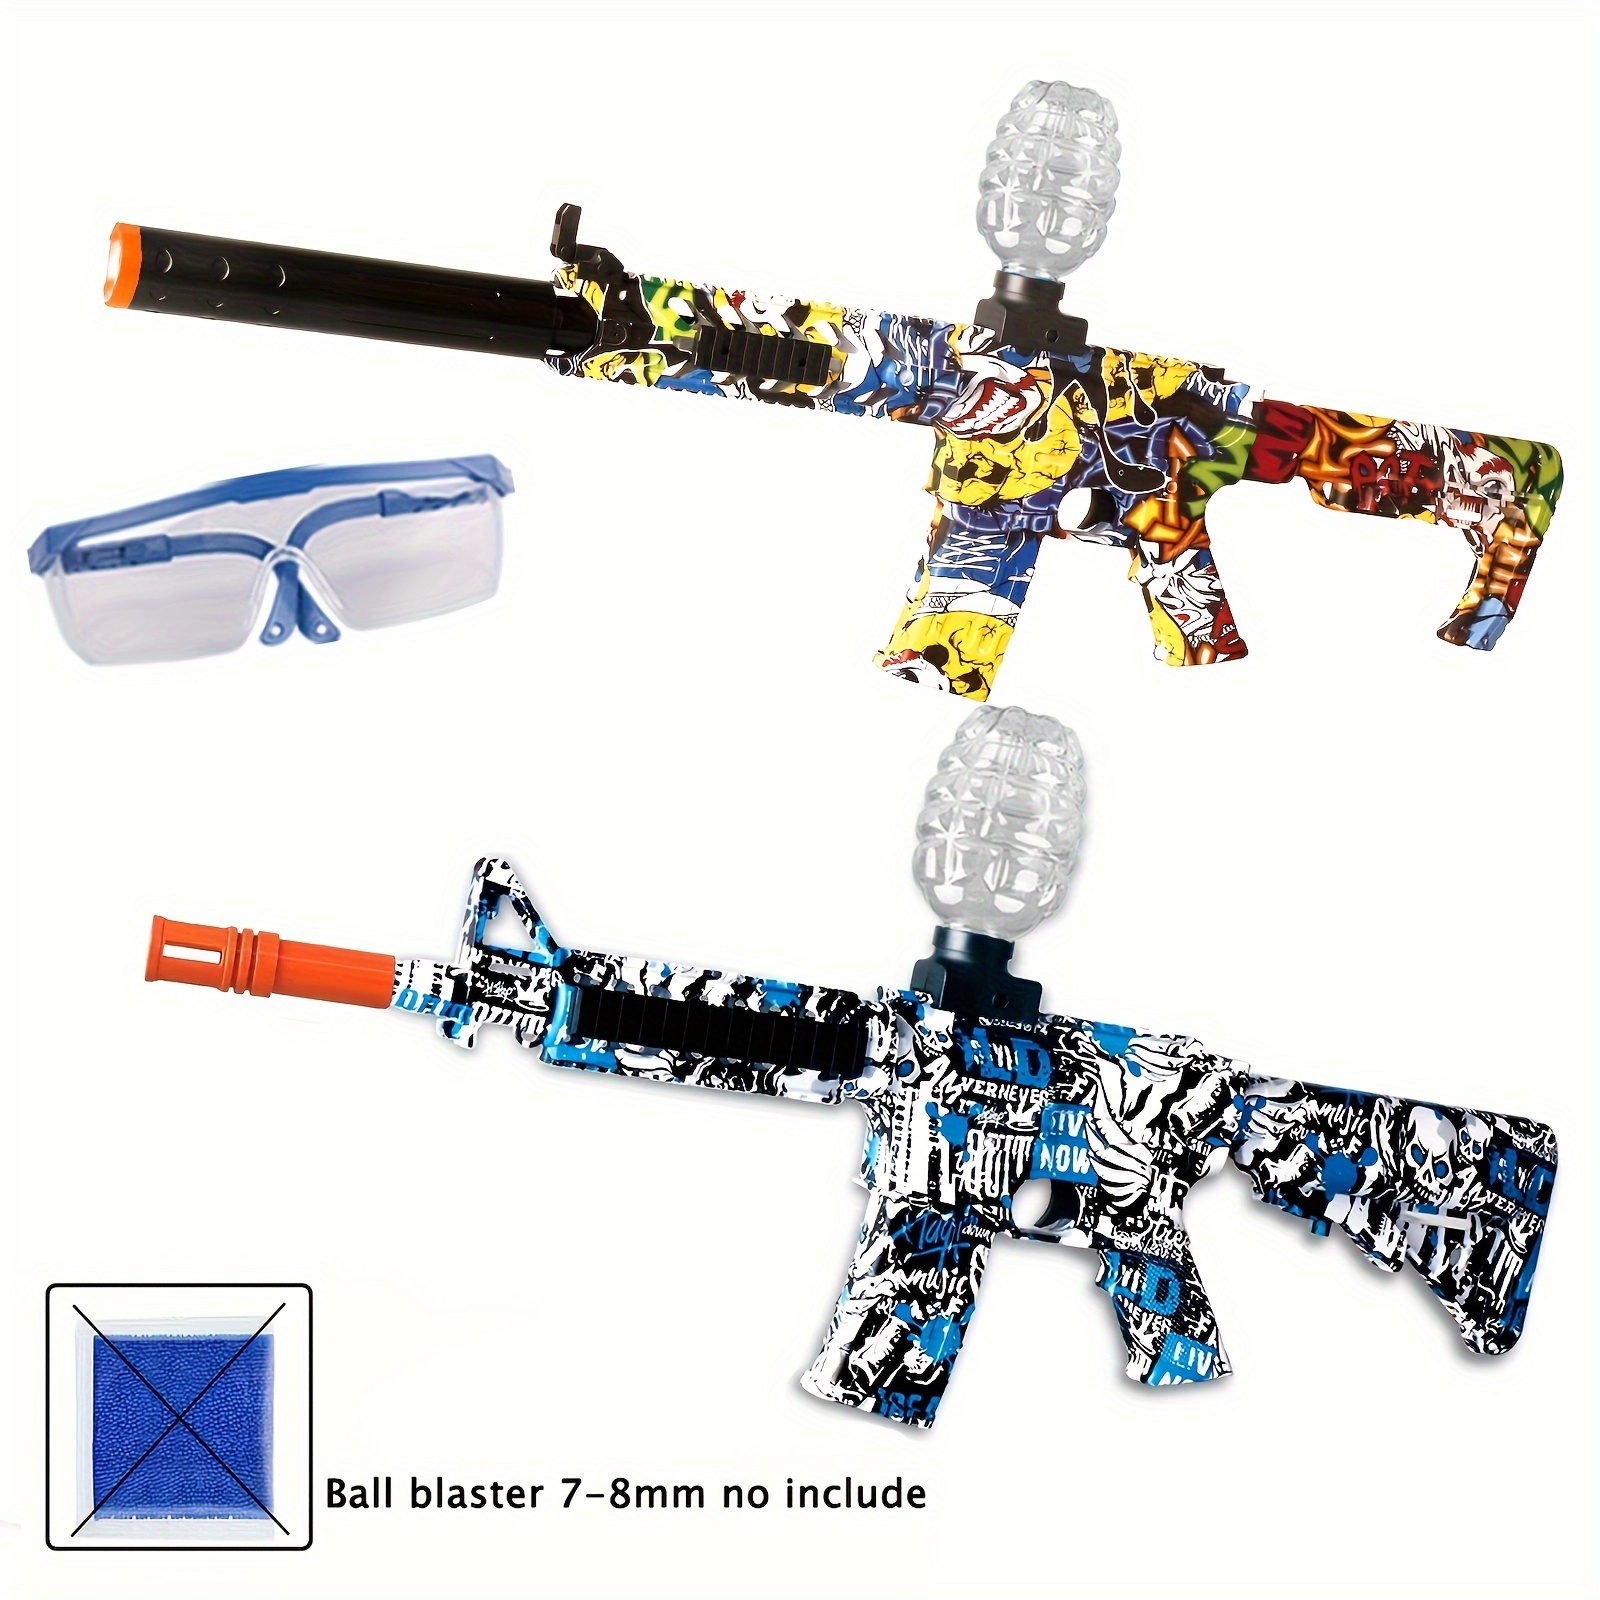 BIU BLASTER - Pistola eléctrica de bolas de gel, pistola de bolas de agua,  bolas de gel de explosión automática, pistola de juguete altamente